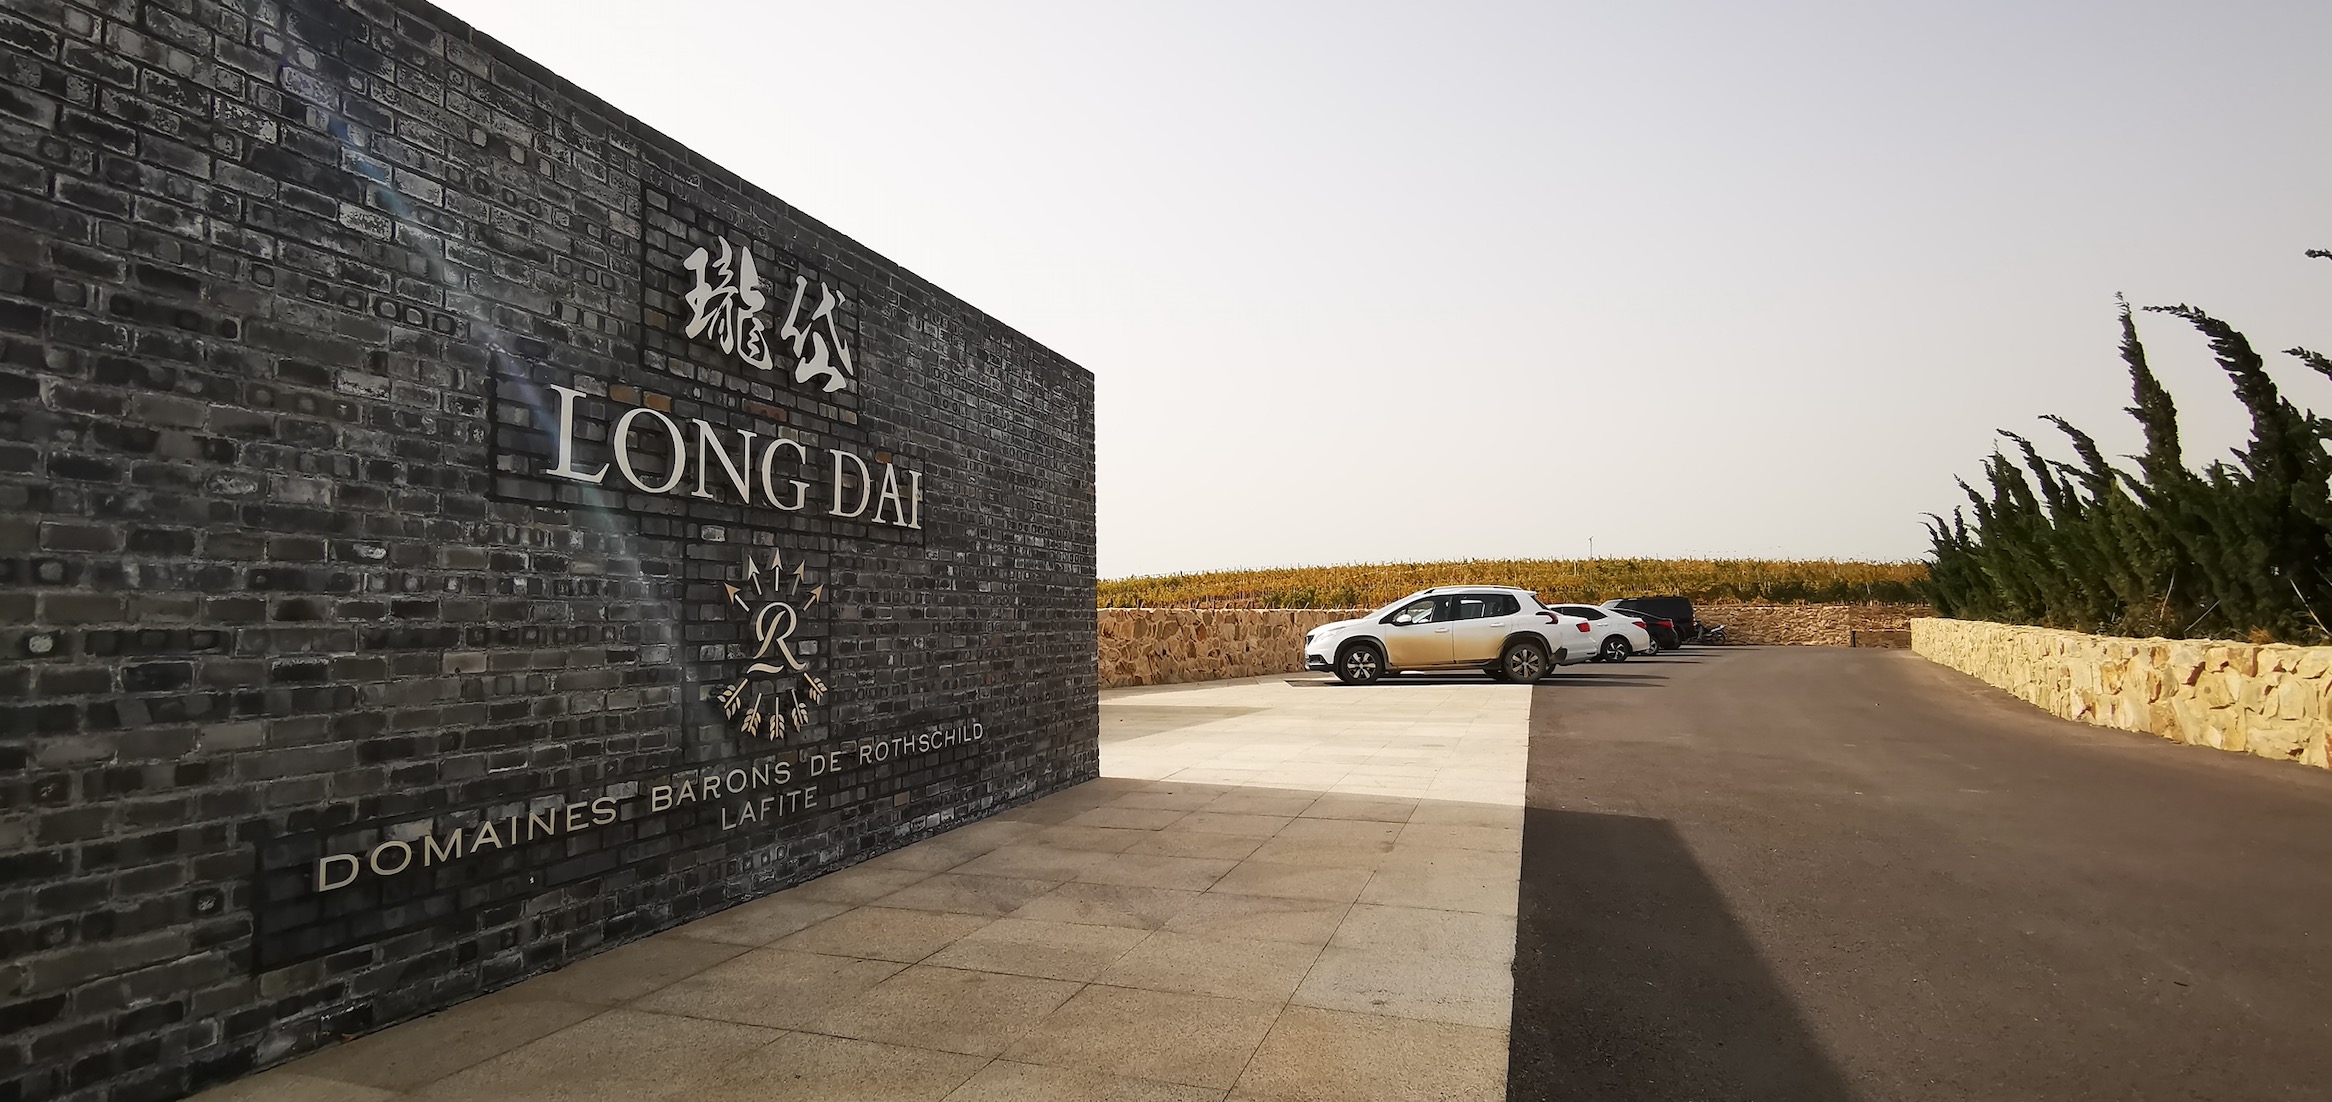 Lançamento: Château Lafite chinês anuncia excepcional safra 2019 